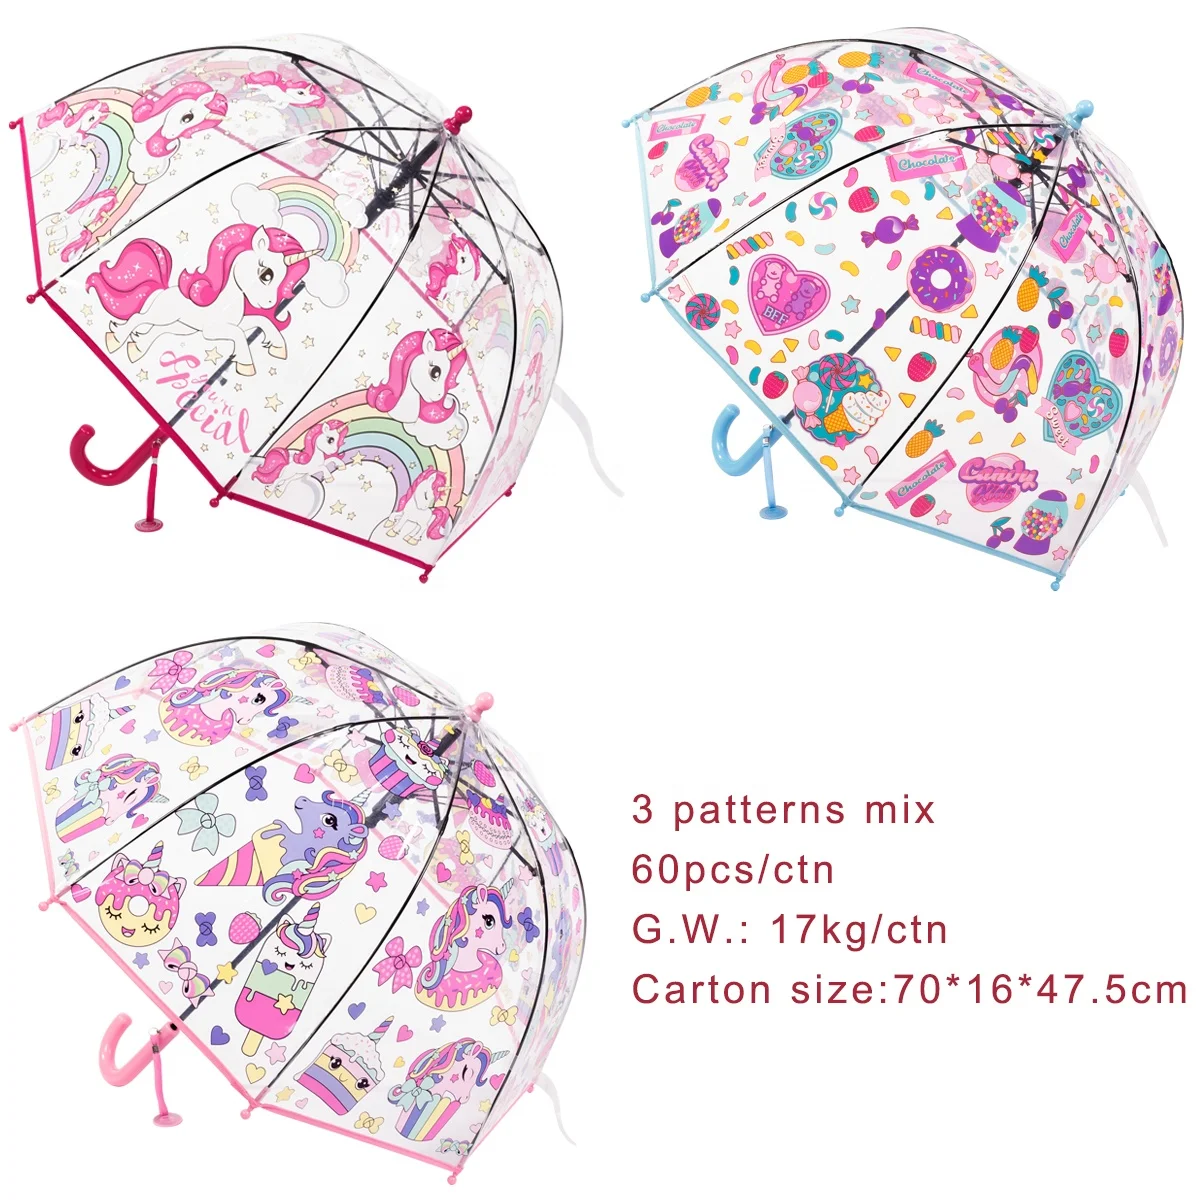 RST Гуанчжоу оптовая продажа Детский дешевый зонтик новый купол 19 дюймов маленький размер прозрачный зонт с единорогом